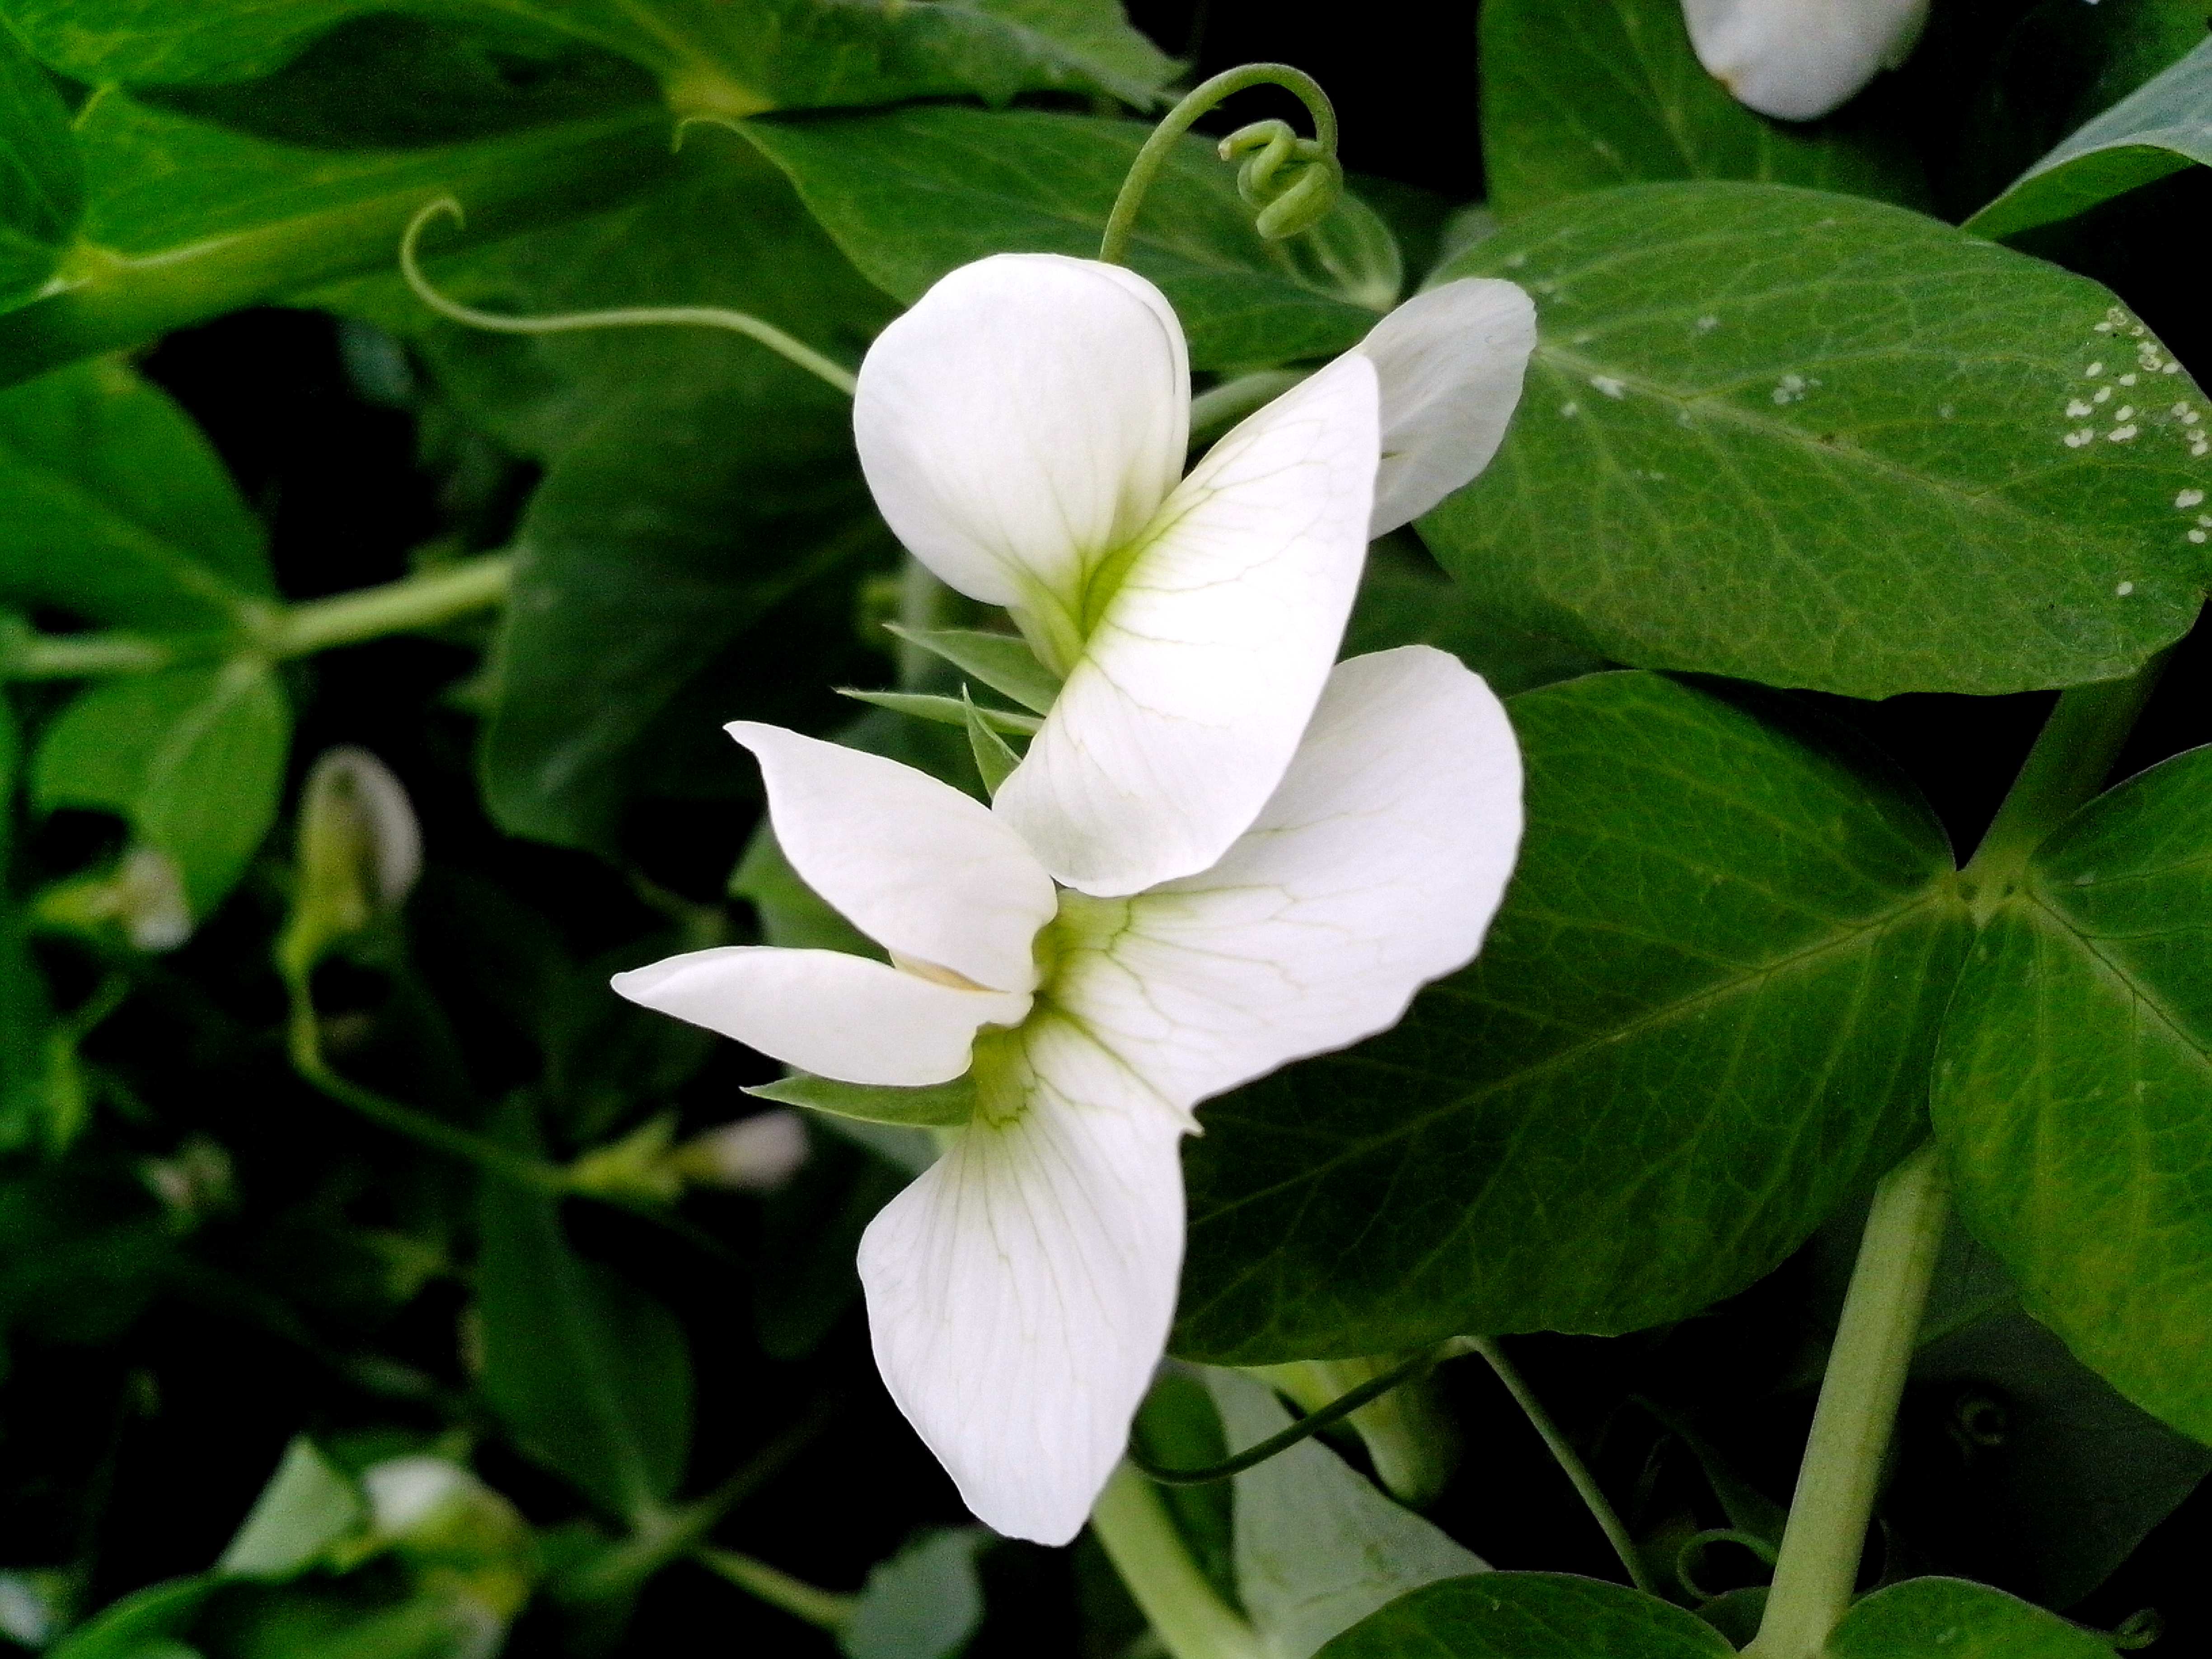 Image libre: de près, fleur blanche